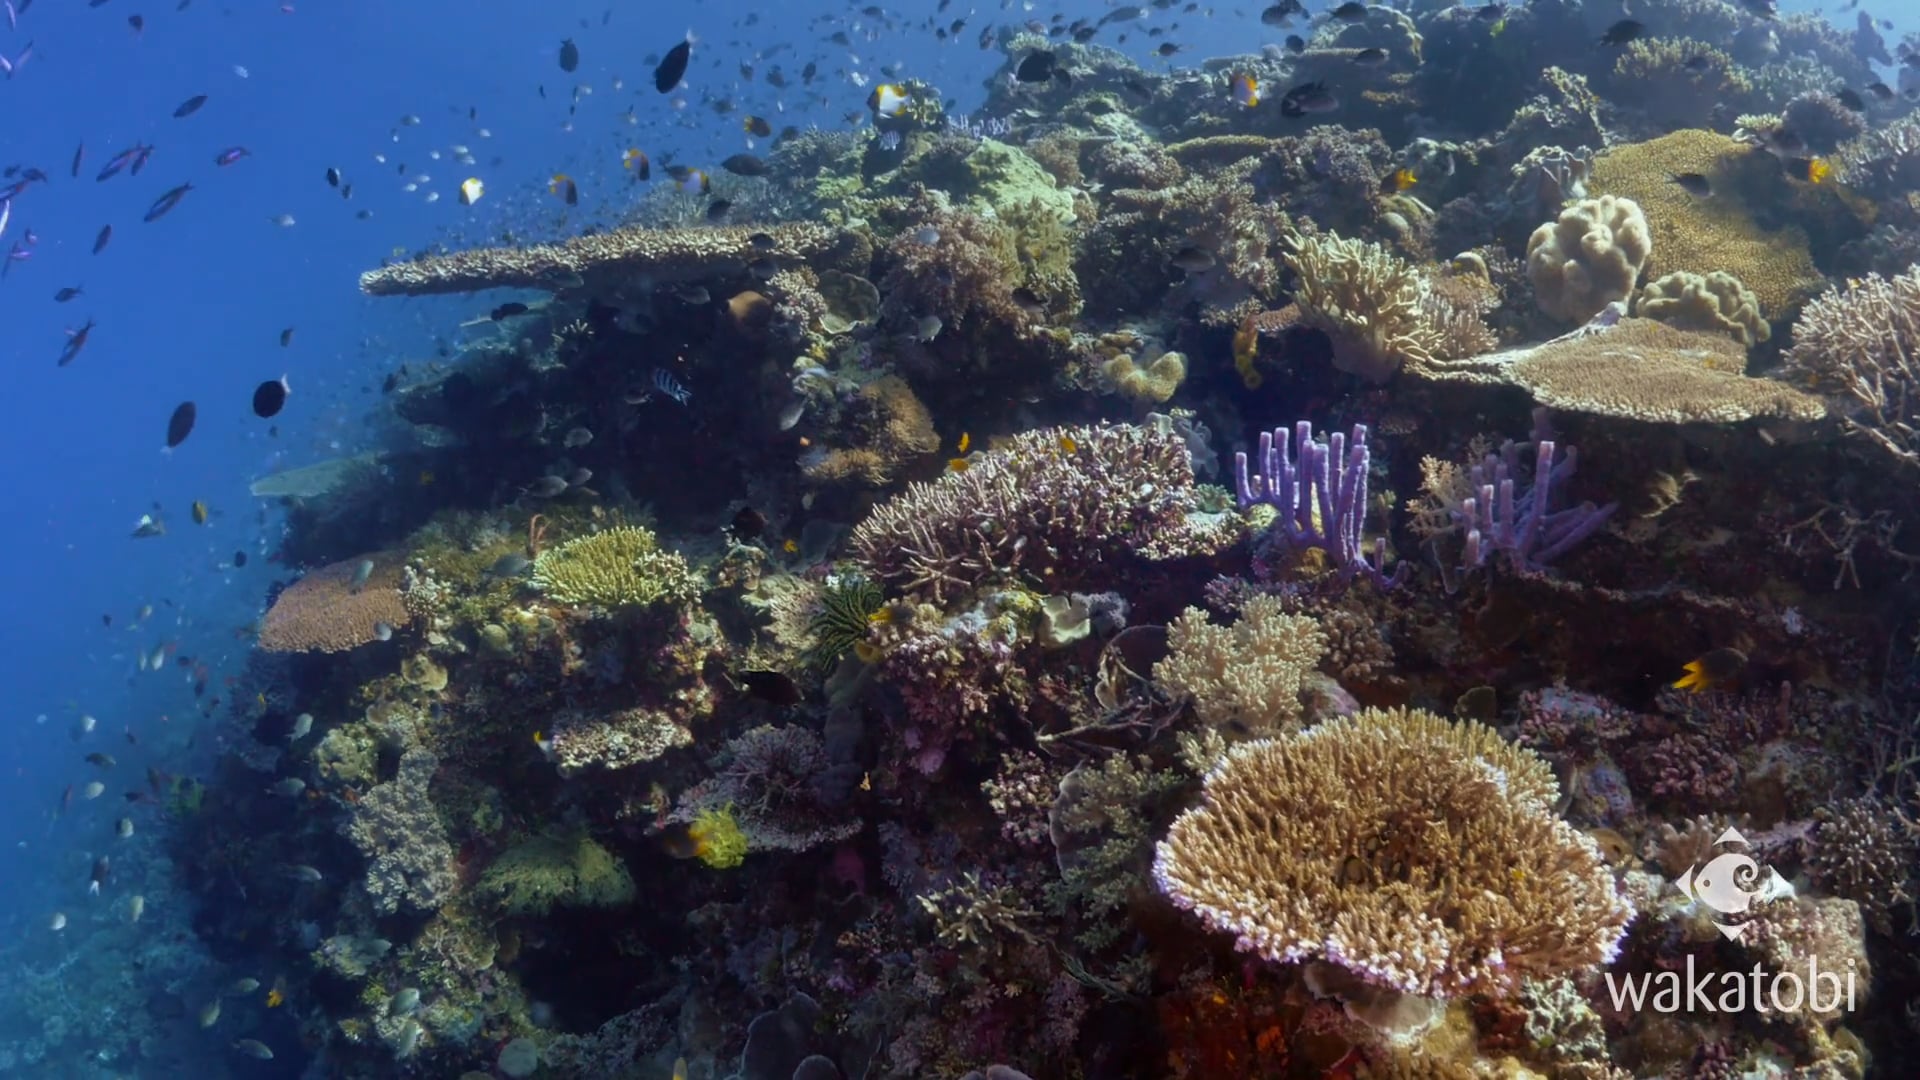 The Great Wakatobi Reef Experience